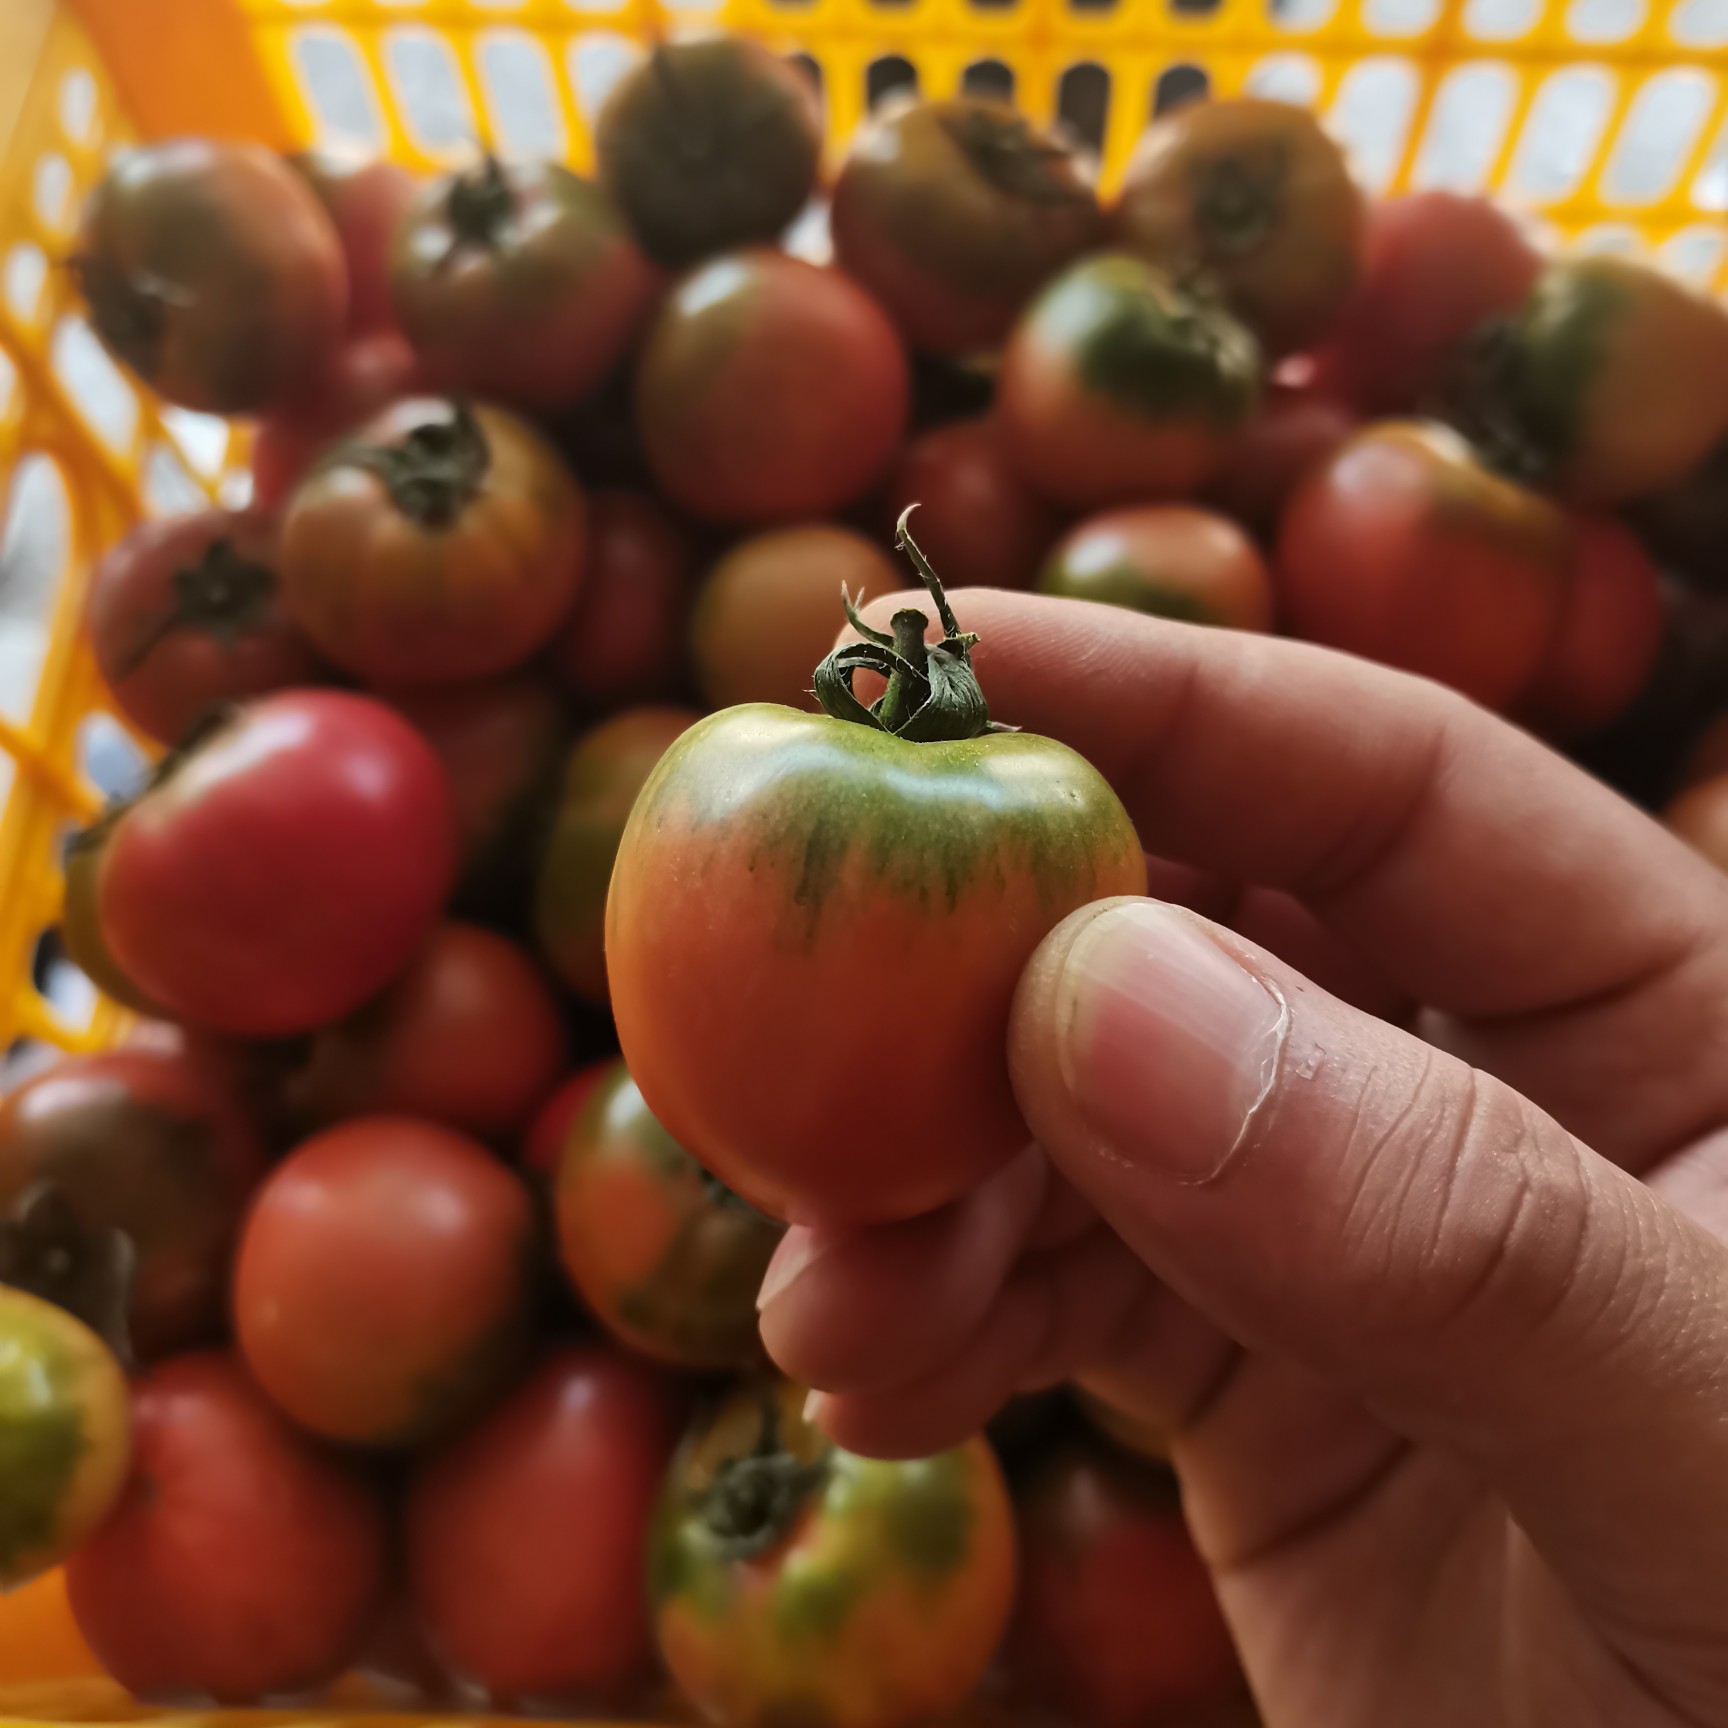 寿光市草莓西红柿 铁皮柿子 糖度高 绿肩浓 常年有货 基地直接供货